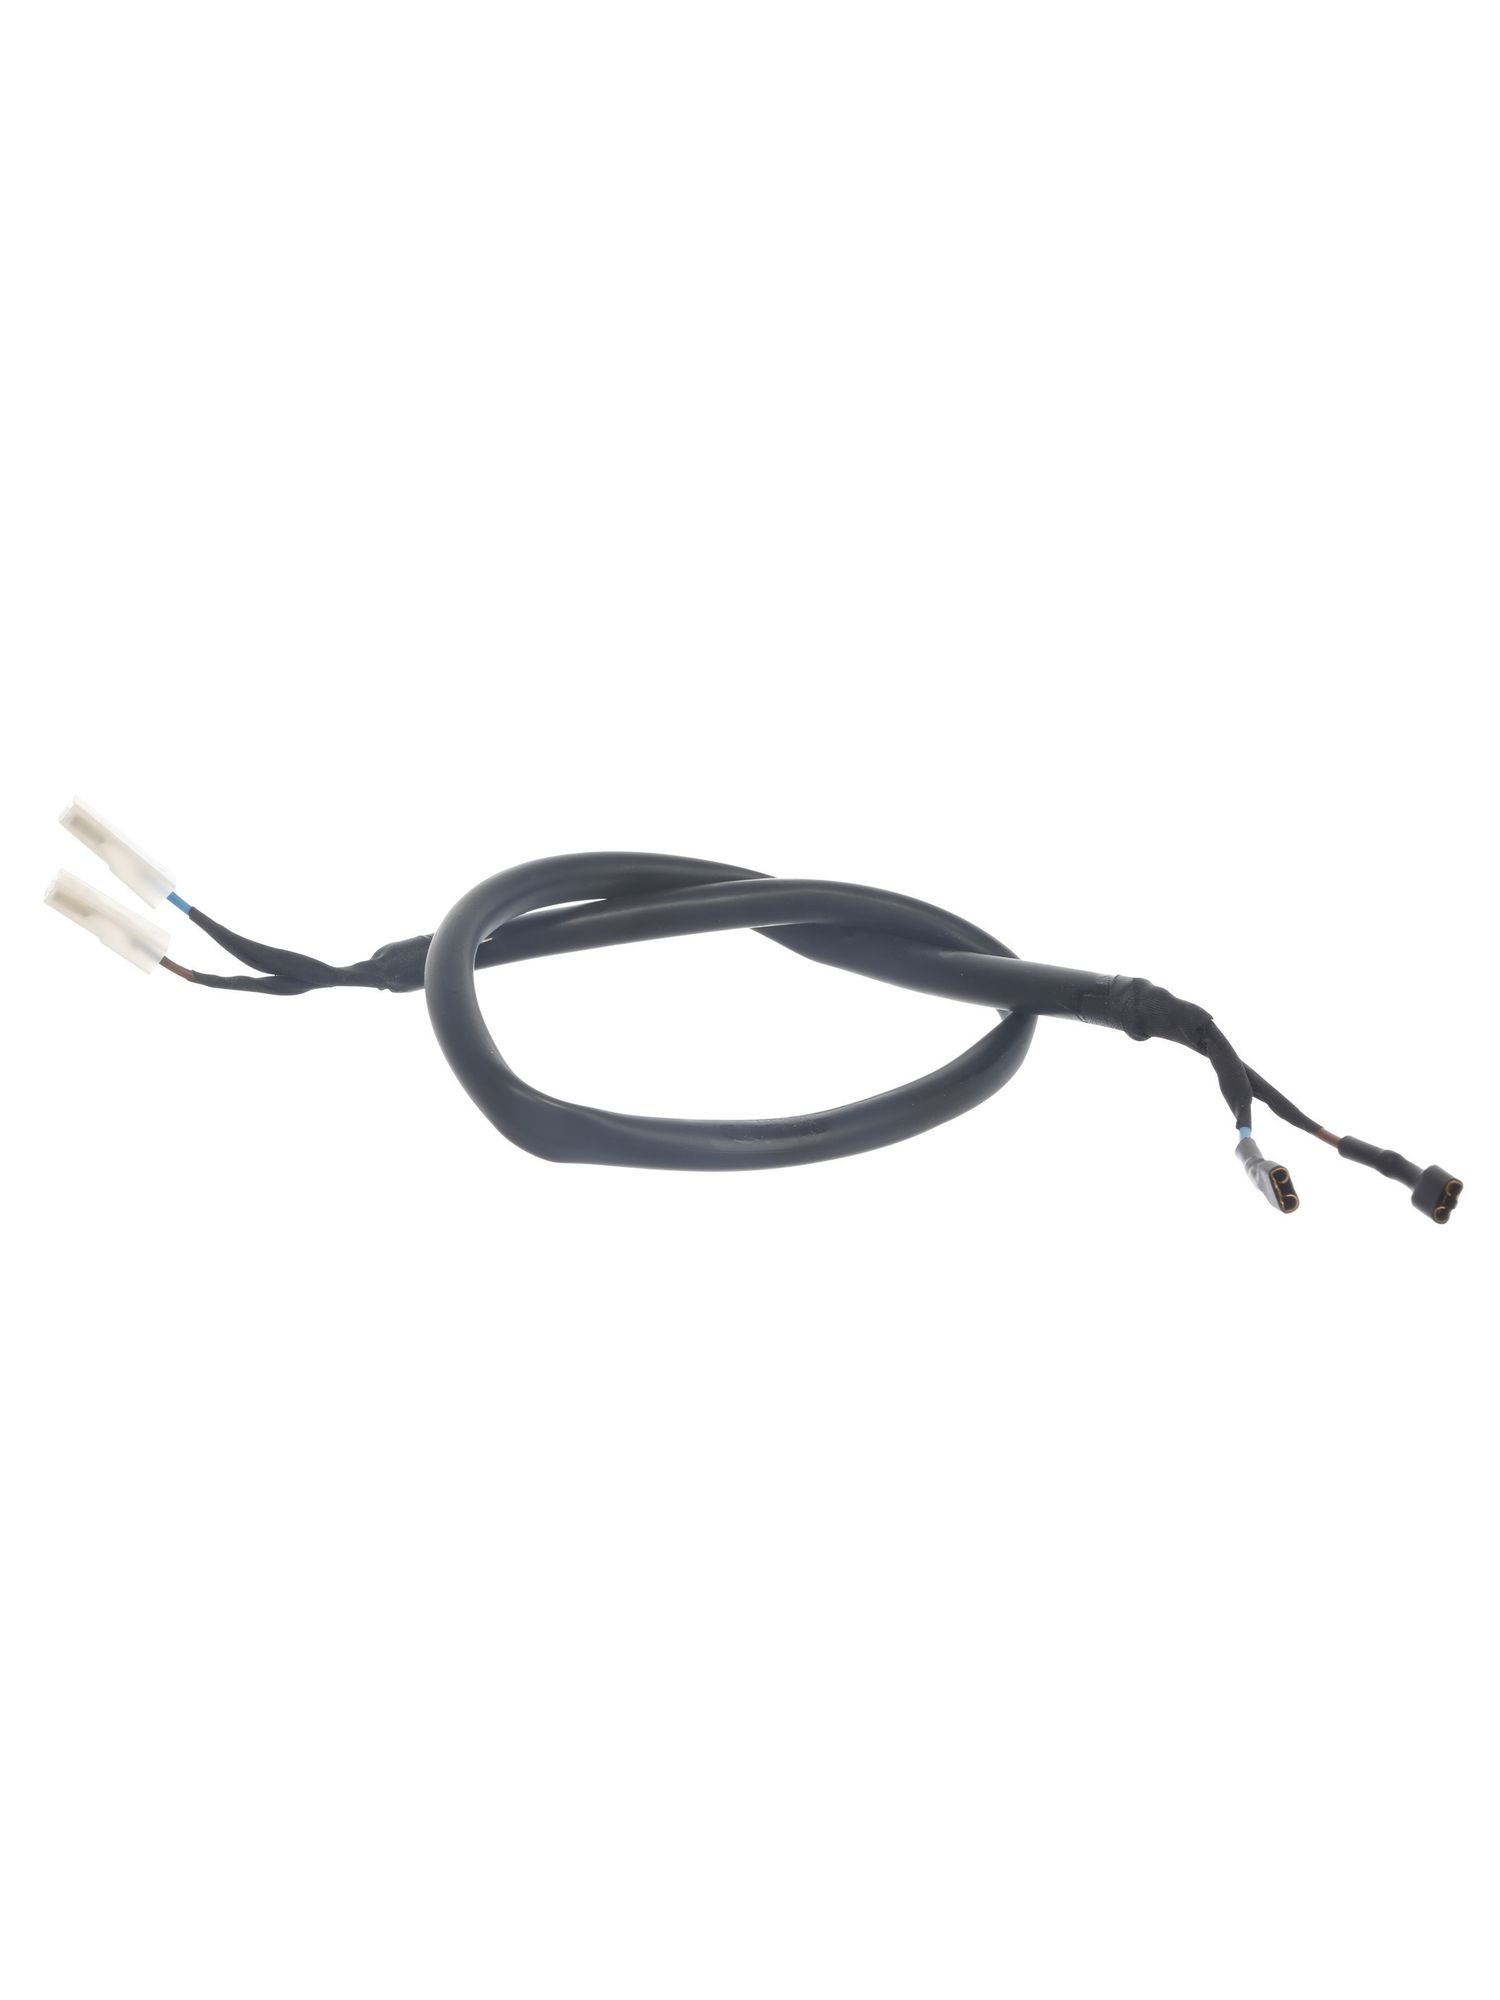 Kabel EU Noise Inputfür Funkentstörfilter (KD-11007296) von BSH